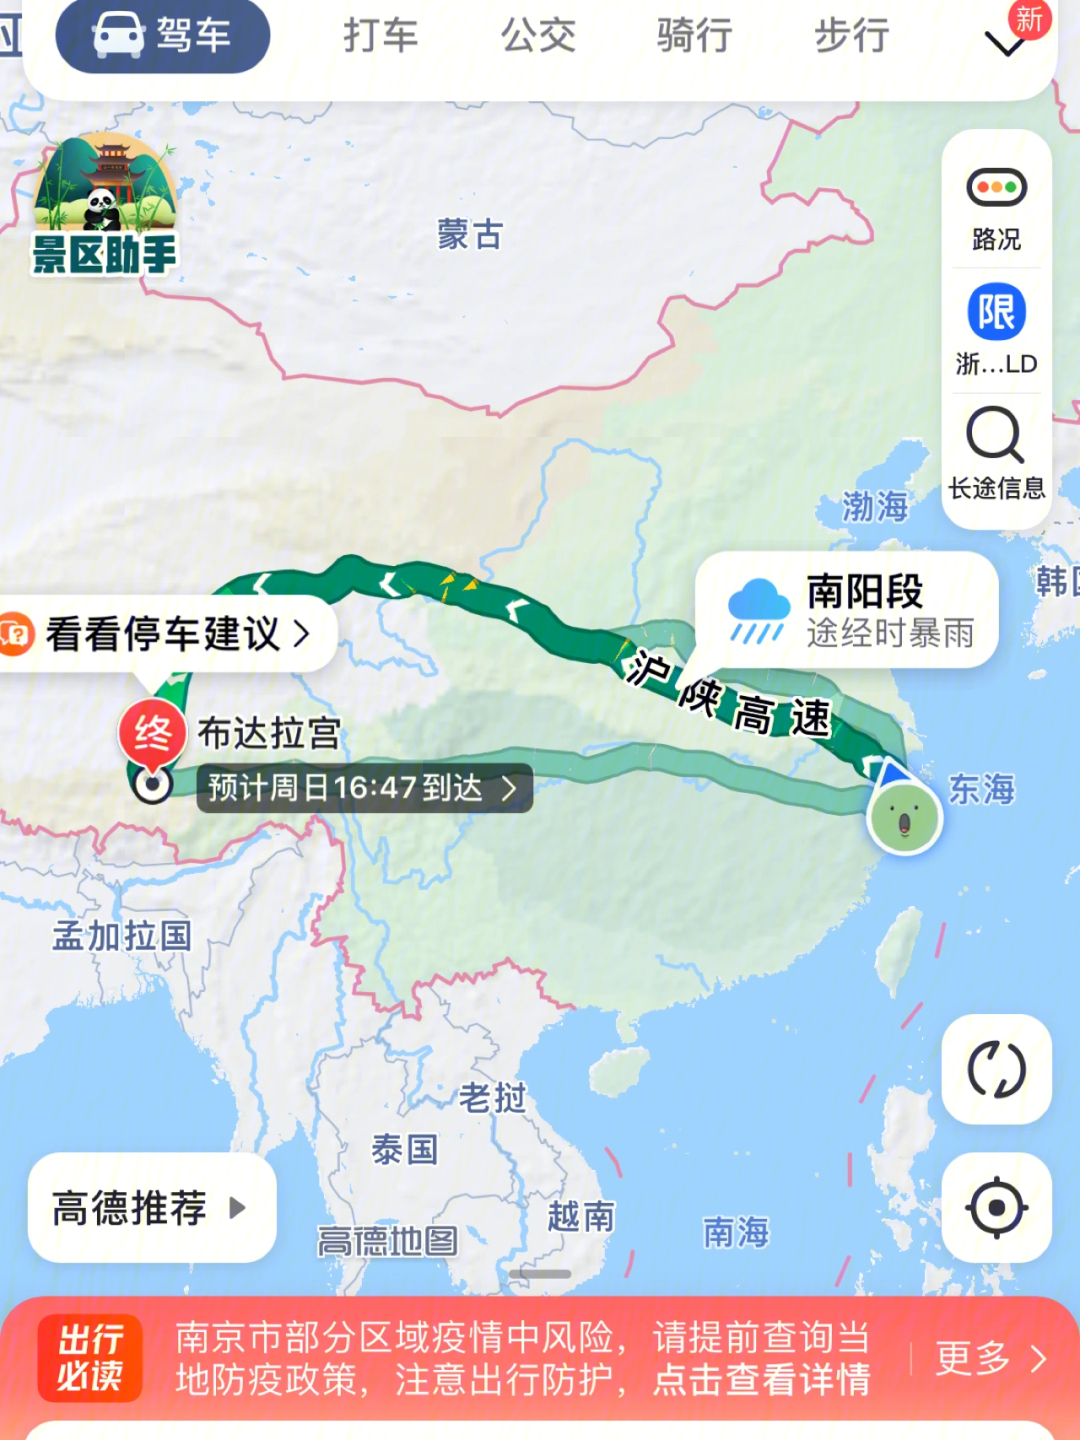 杭州到青海湖2300公里,路上经过武汉和西安可玩可不玩,青海湖到拉萨